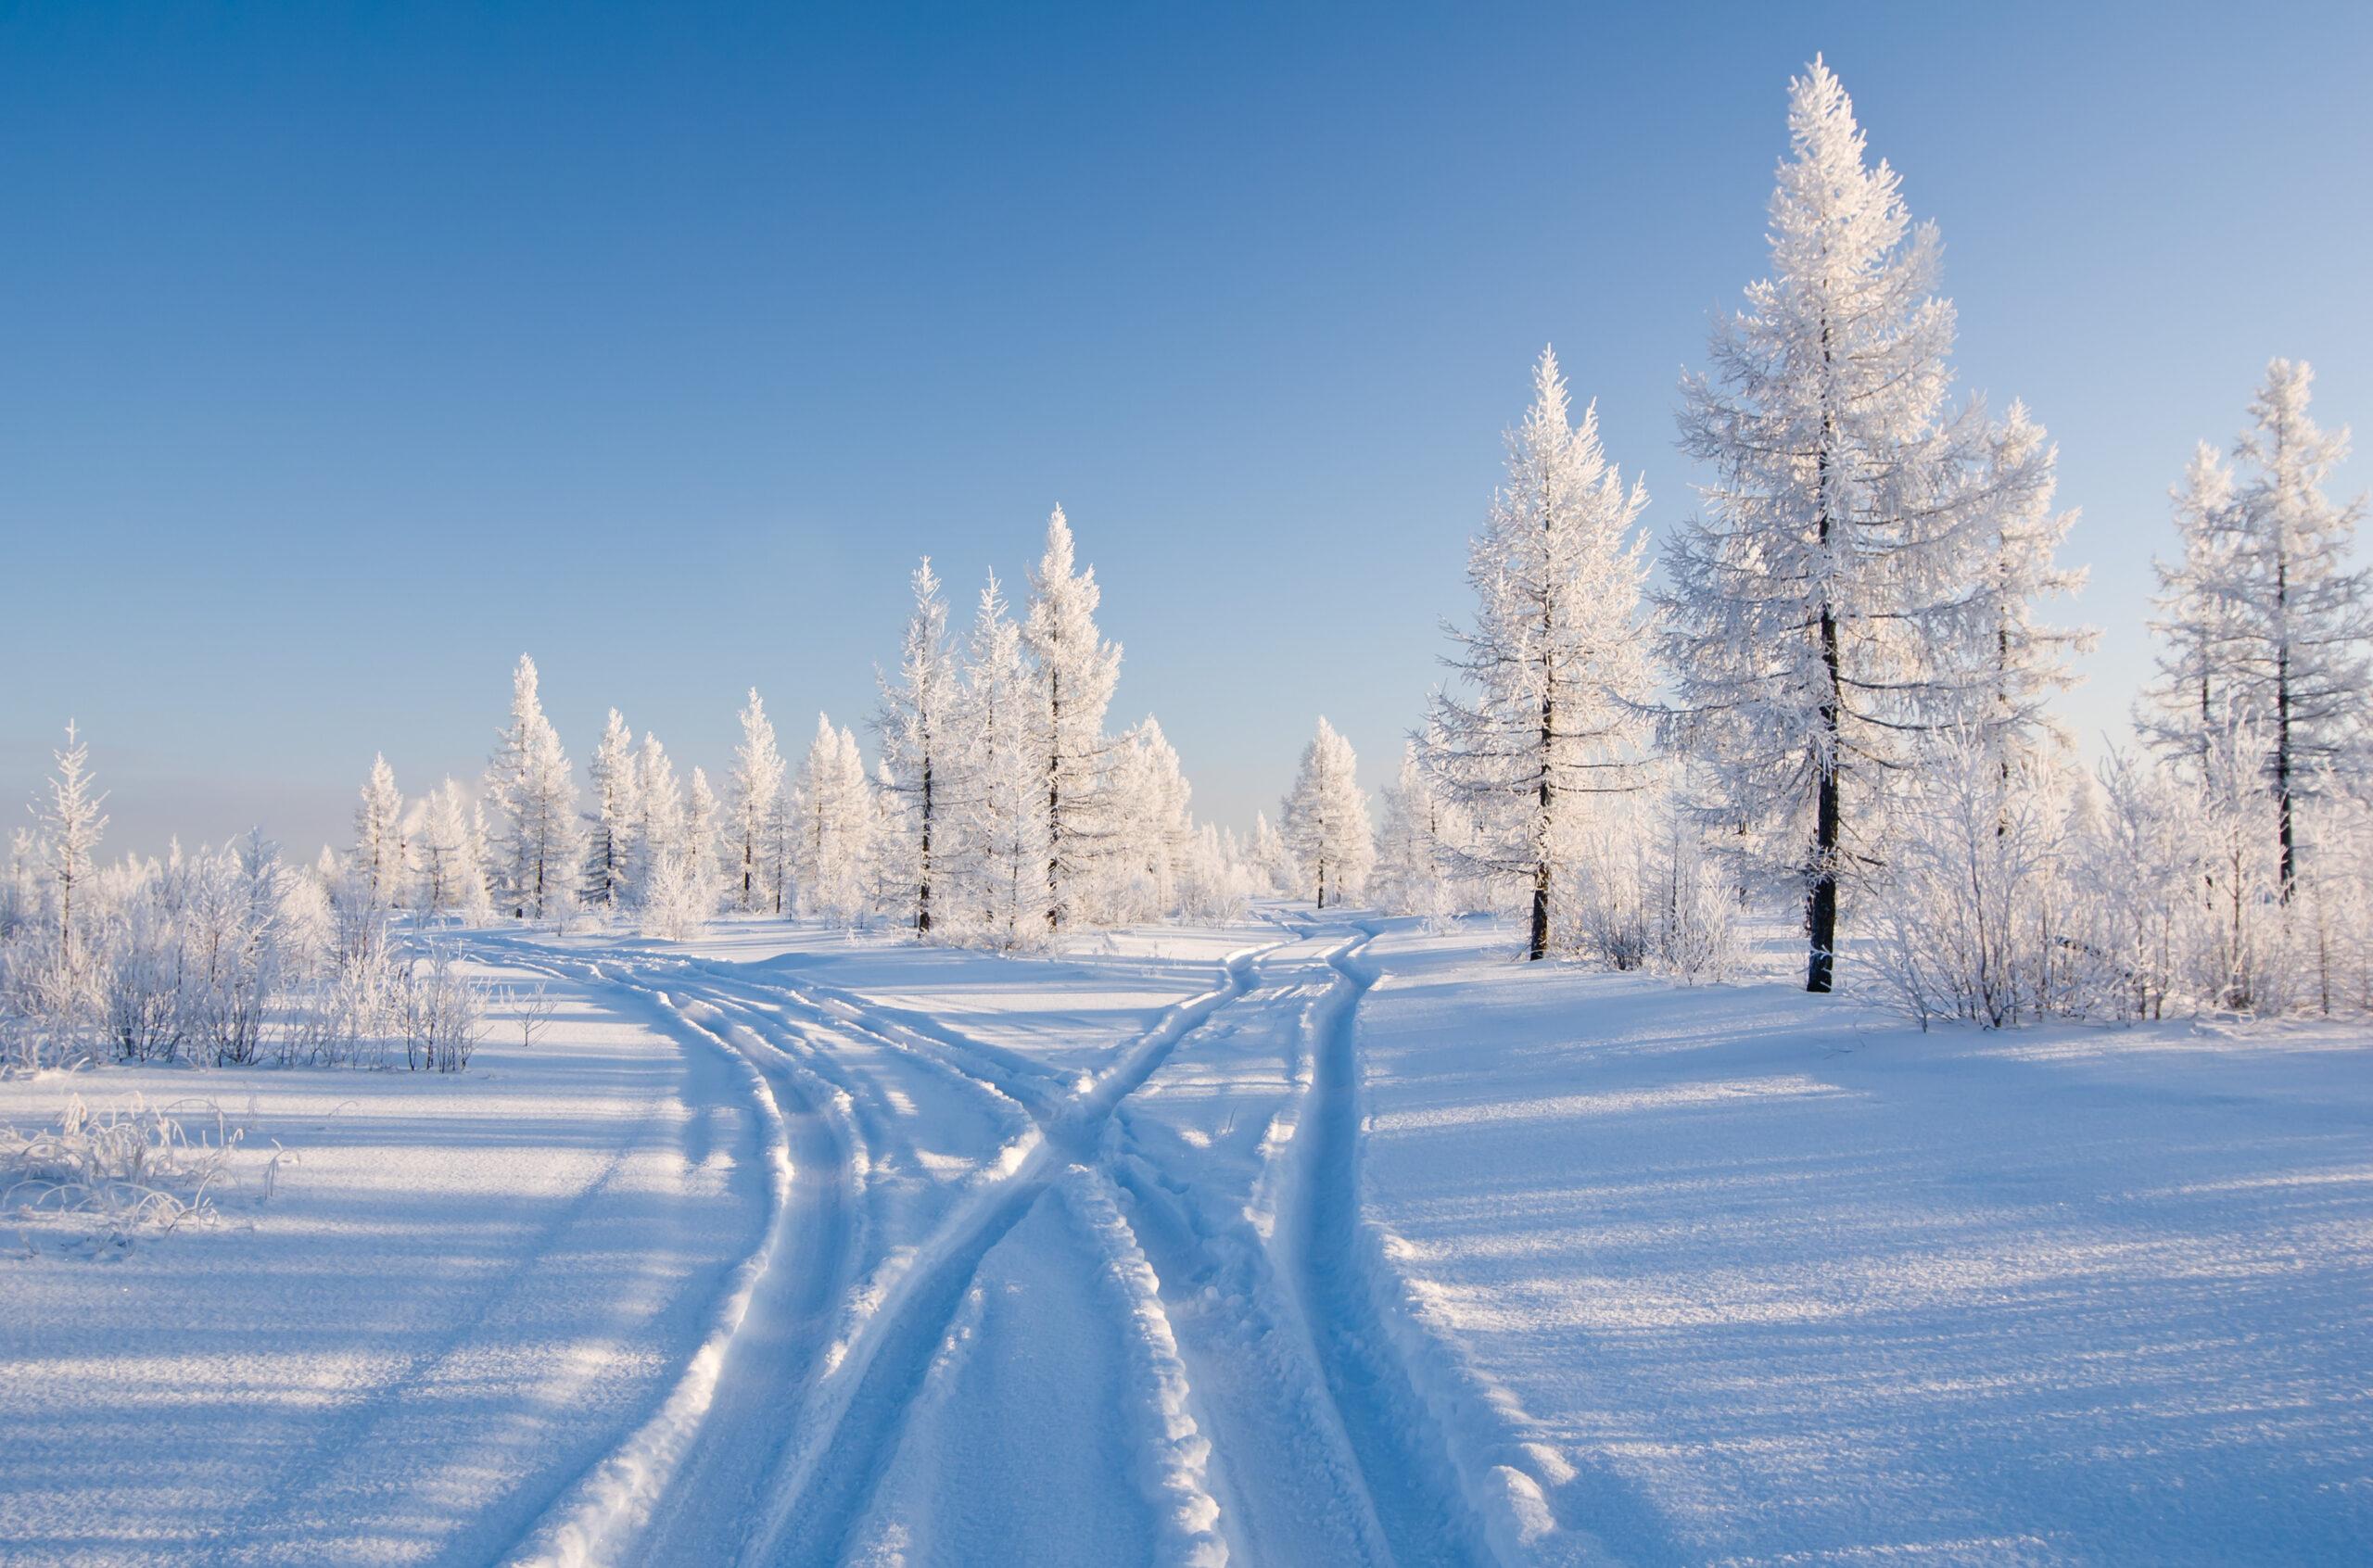 Обои на рабочий стол Зимний пейзаж. Деревья покрытые снегом, на фоне  голубого неба, обои для рабочего стола, скачать обои, обои бесплатно